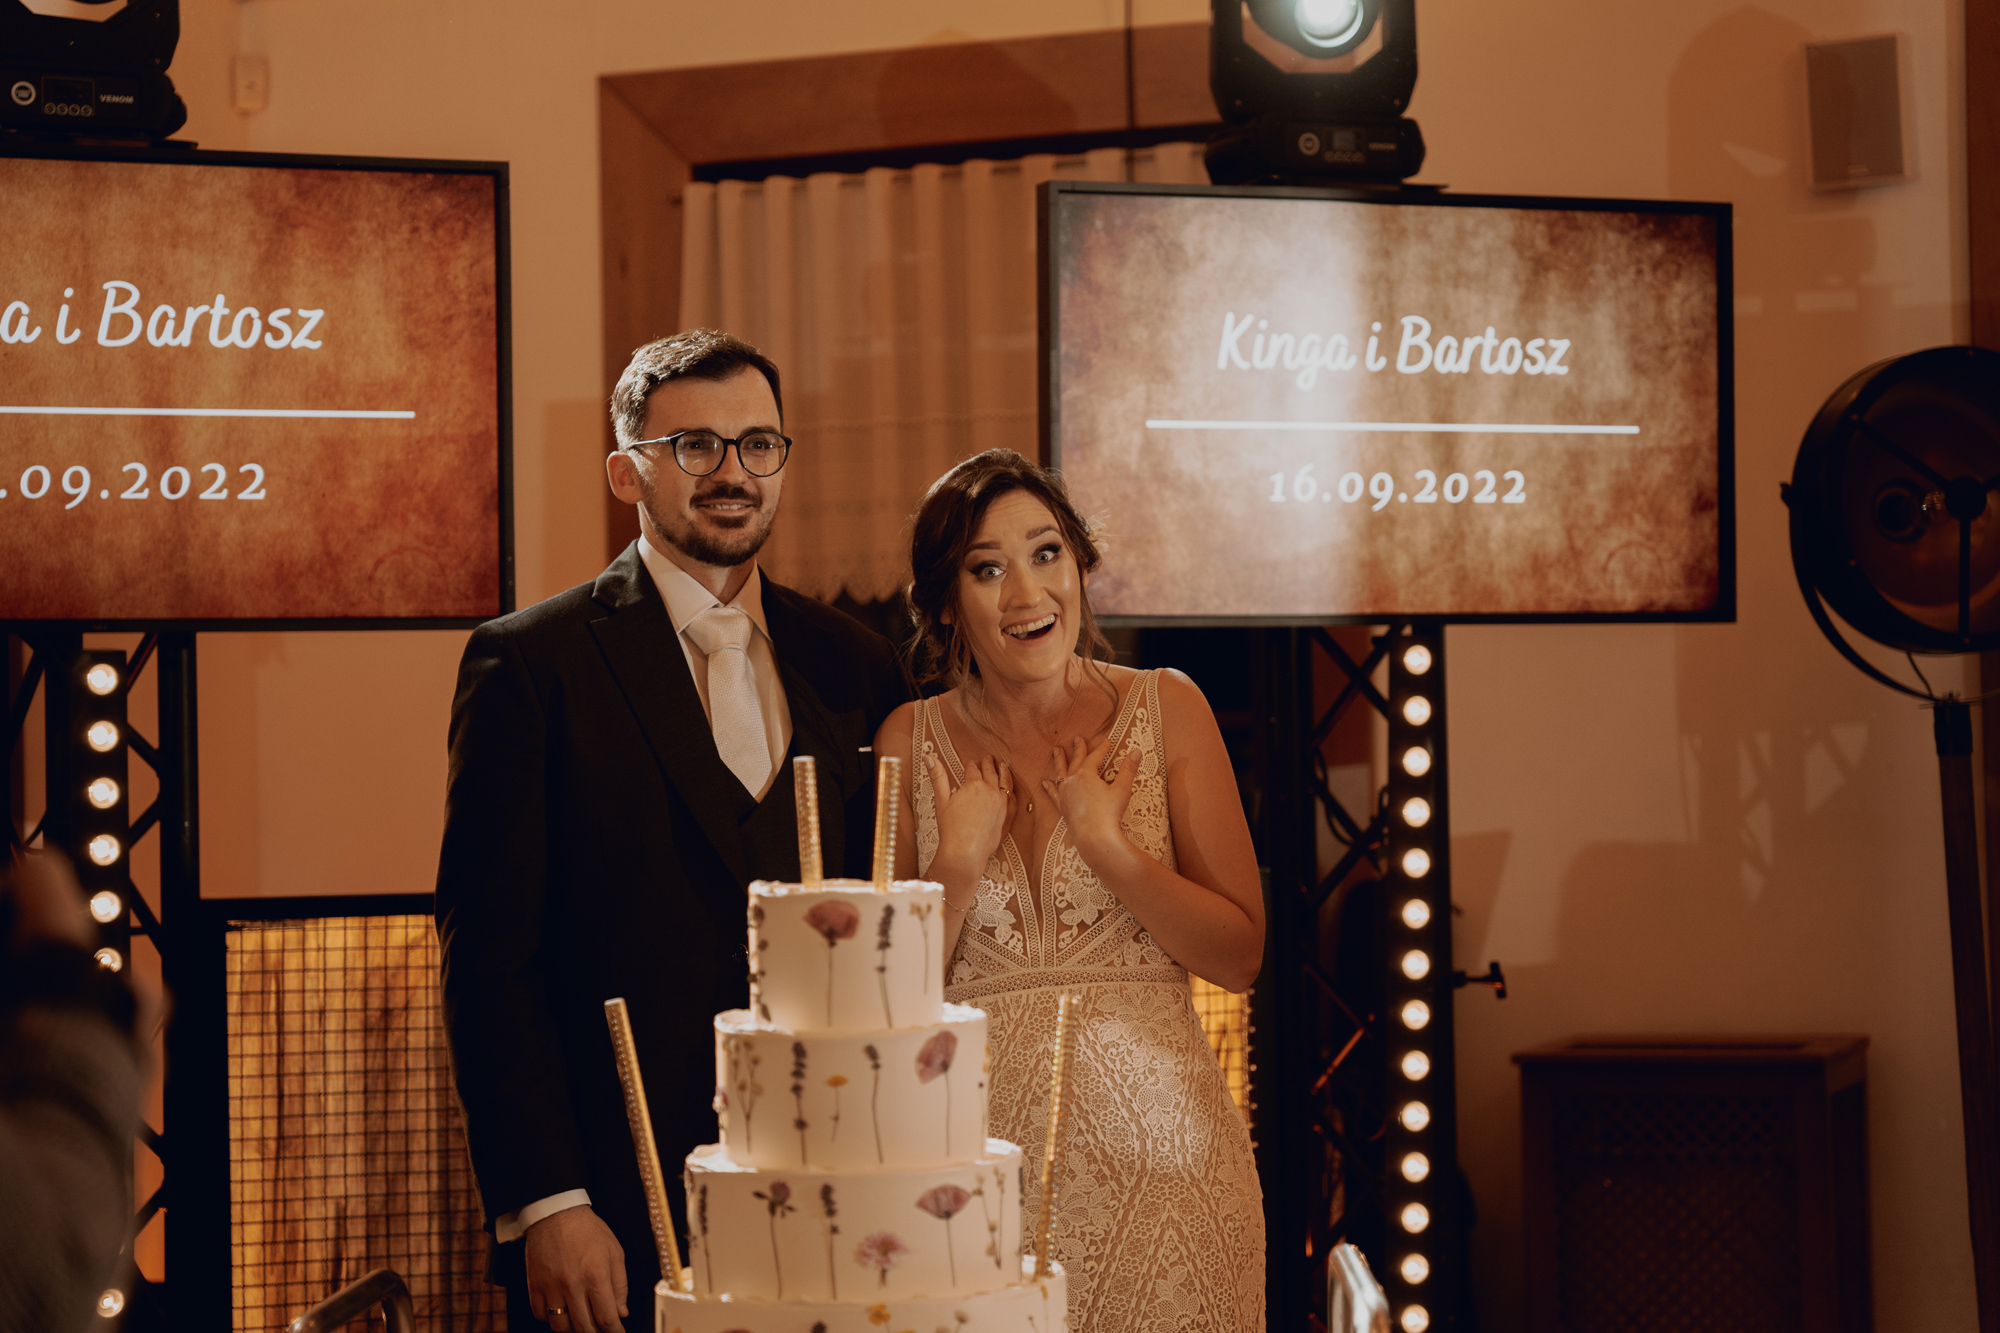 rustykalne wesele tokarnia kielce00102 - Rustykalne wesele w skansenie